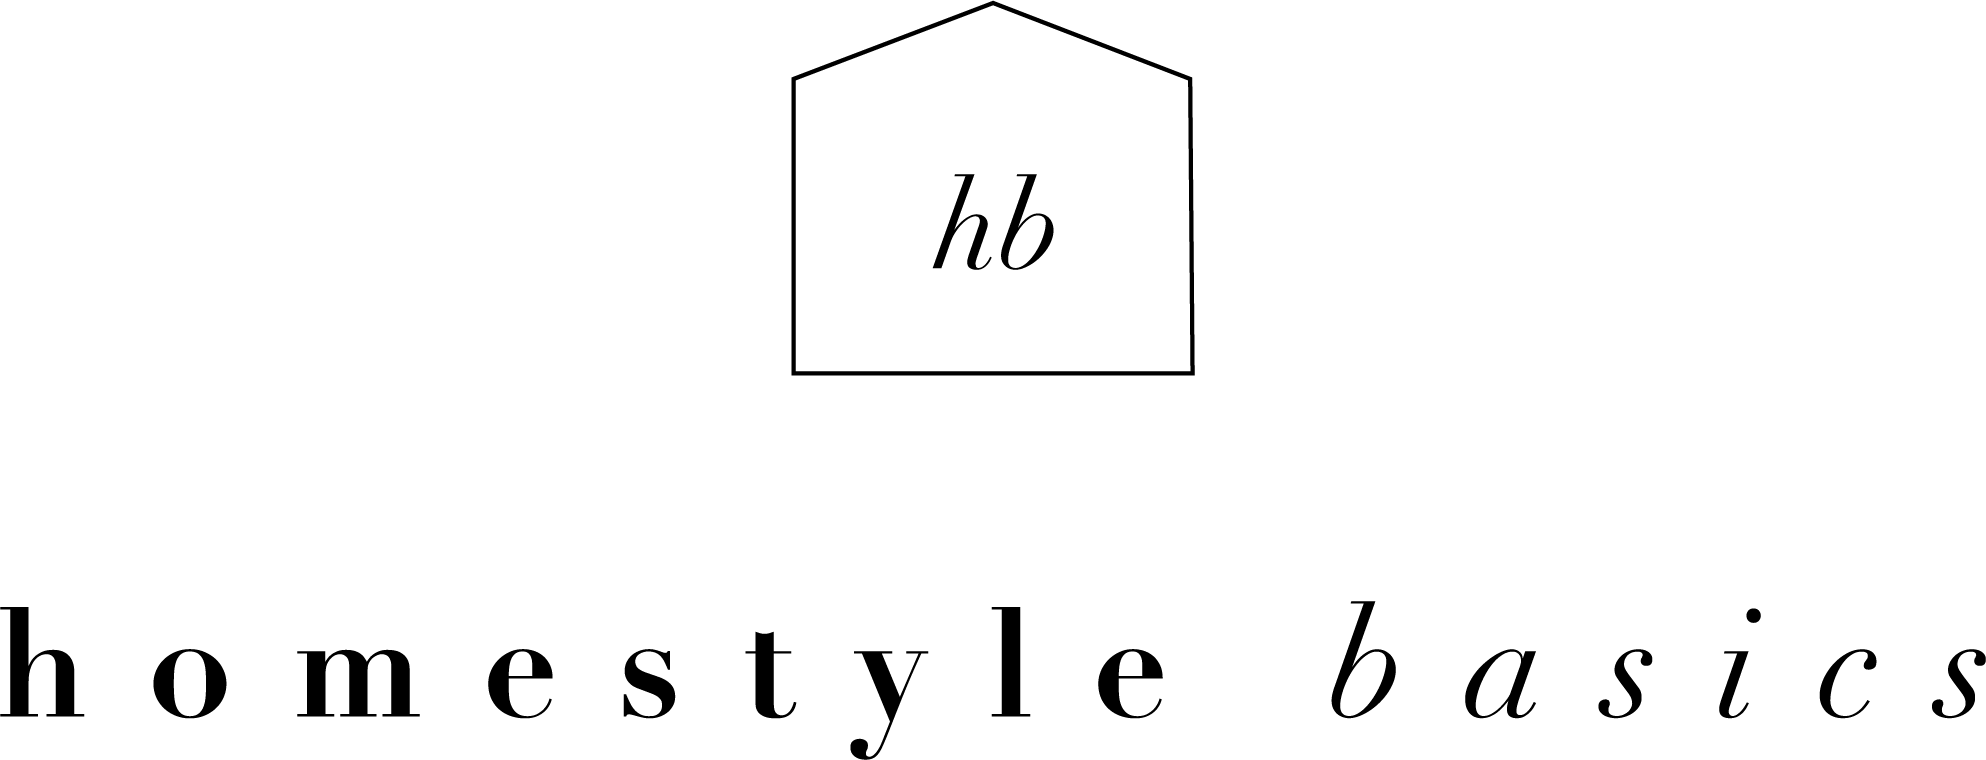 Homestyle Basics by Carolina Valle